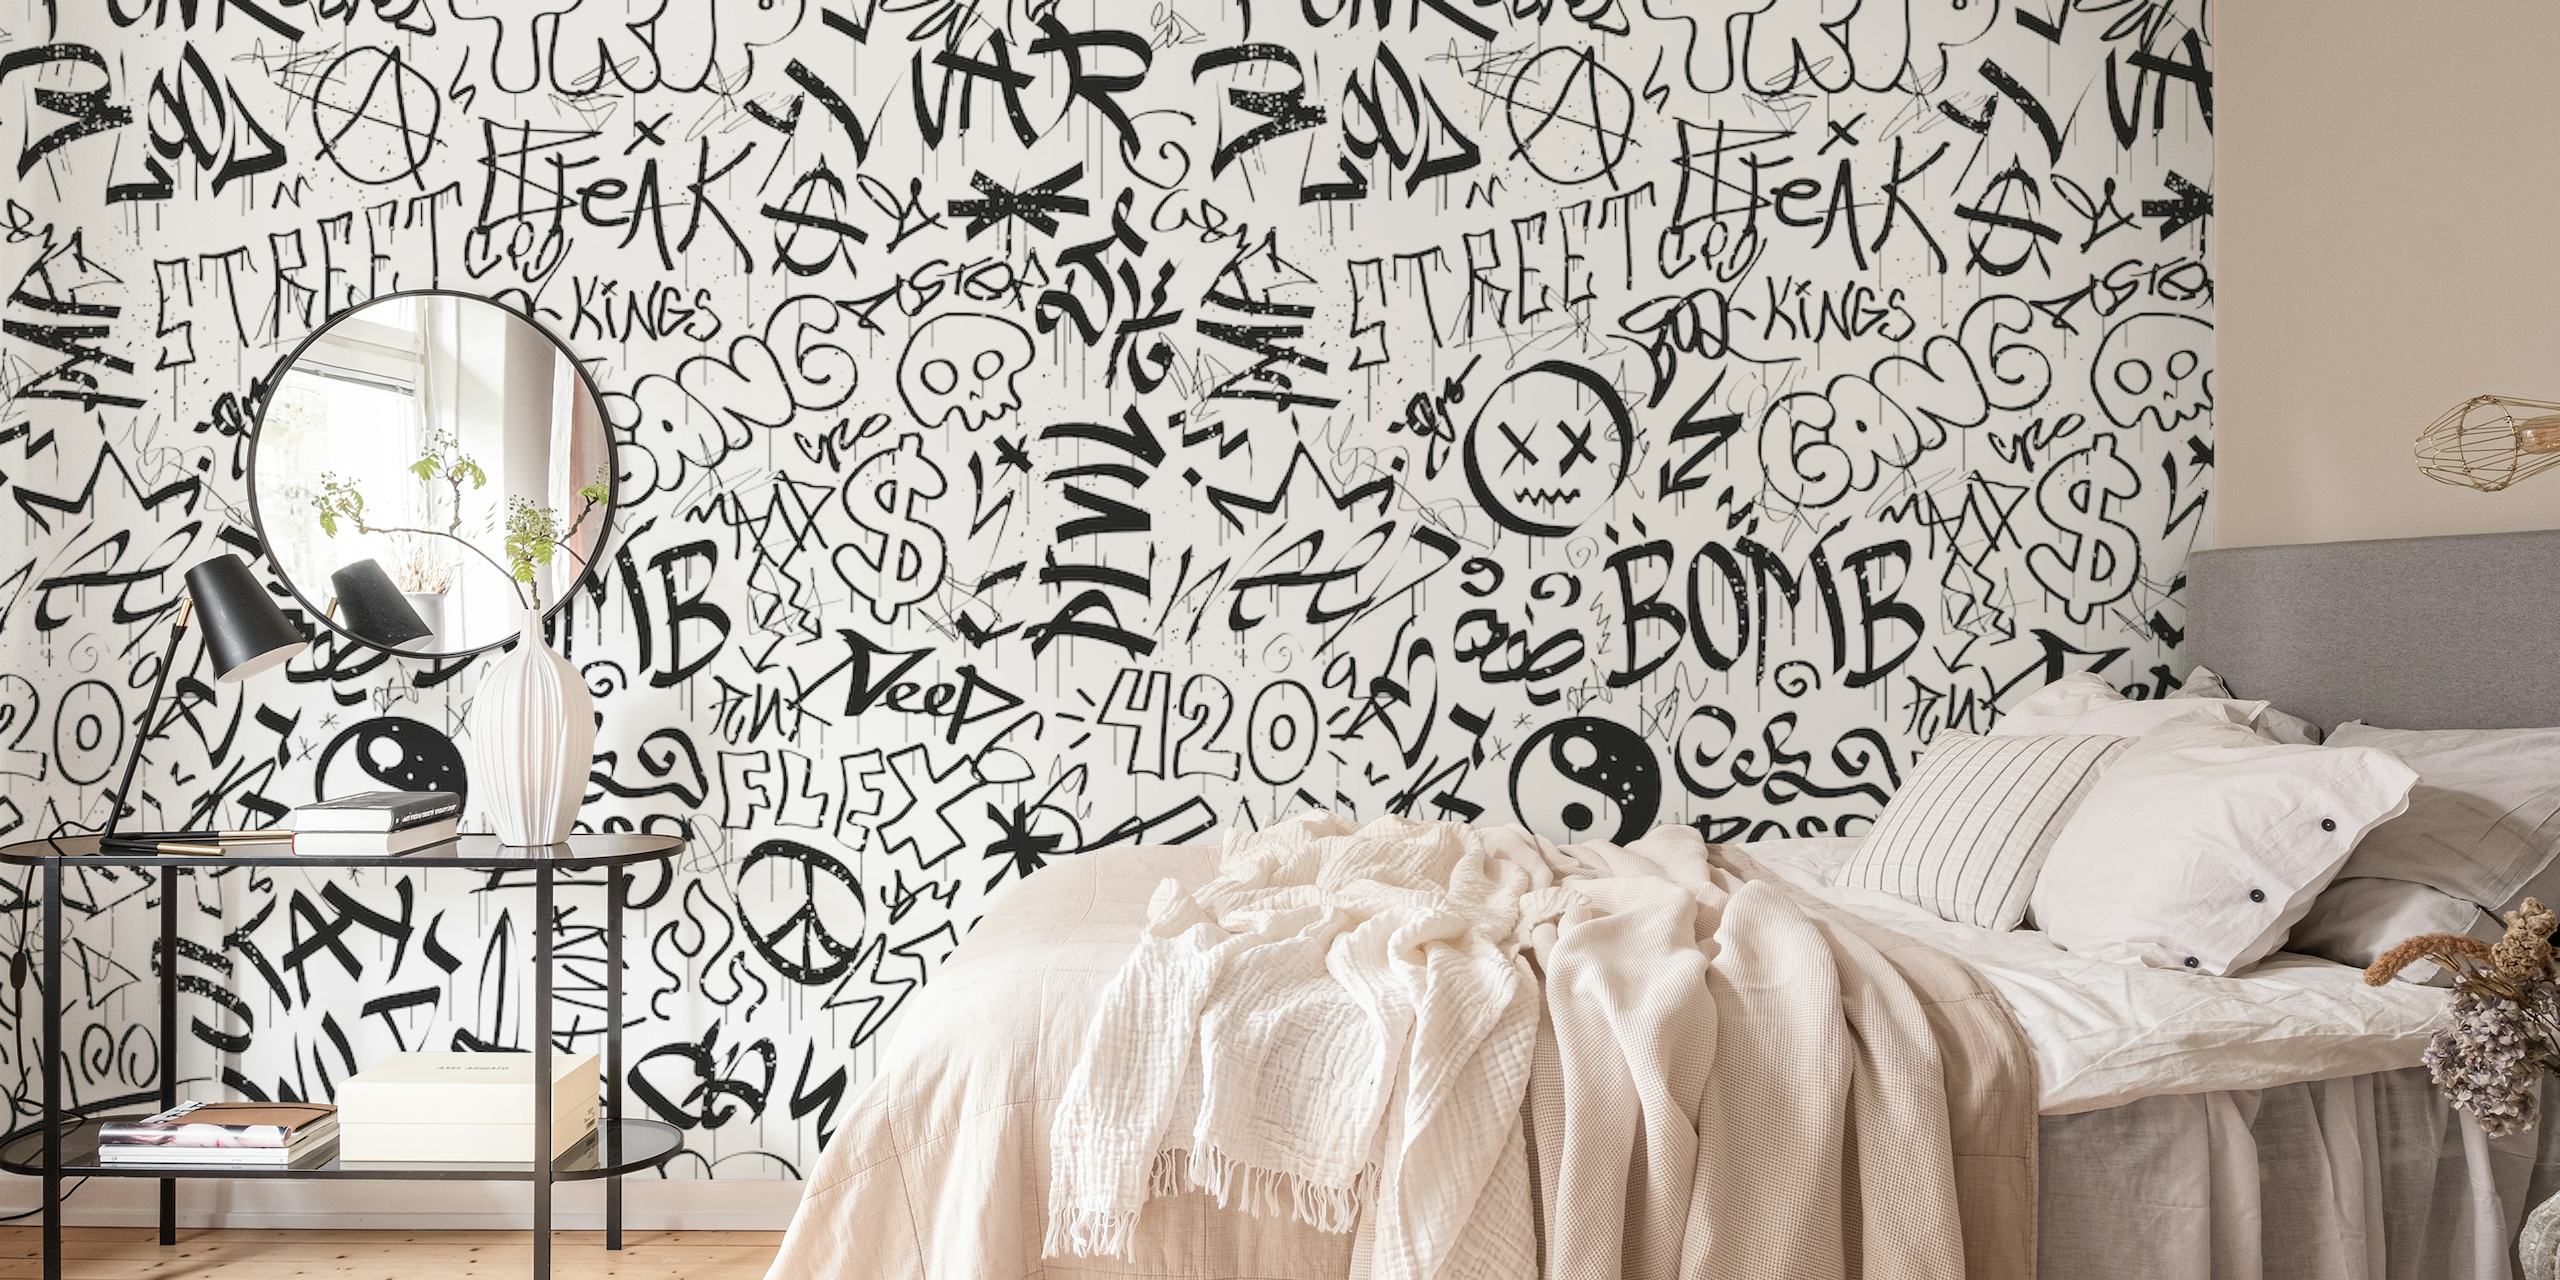 Crno-bijeli zidni mural u stilu grafita s raznim oznakama i likovima.